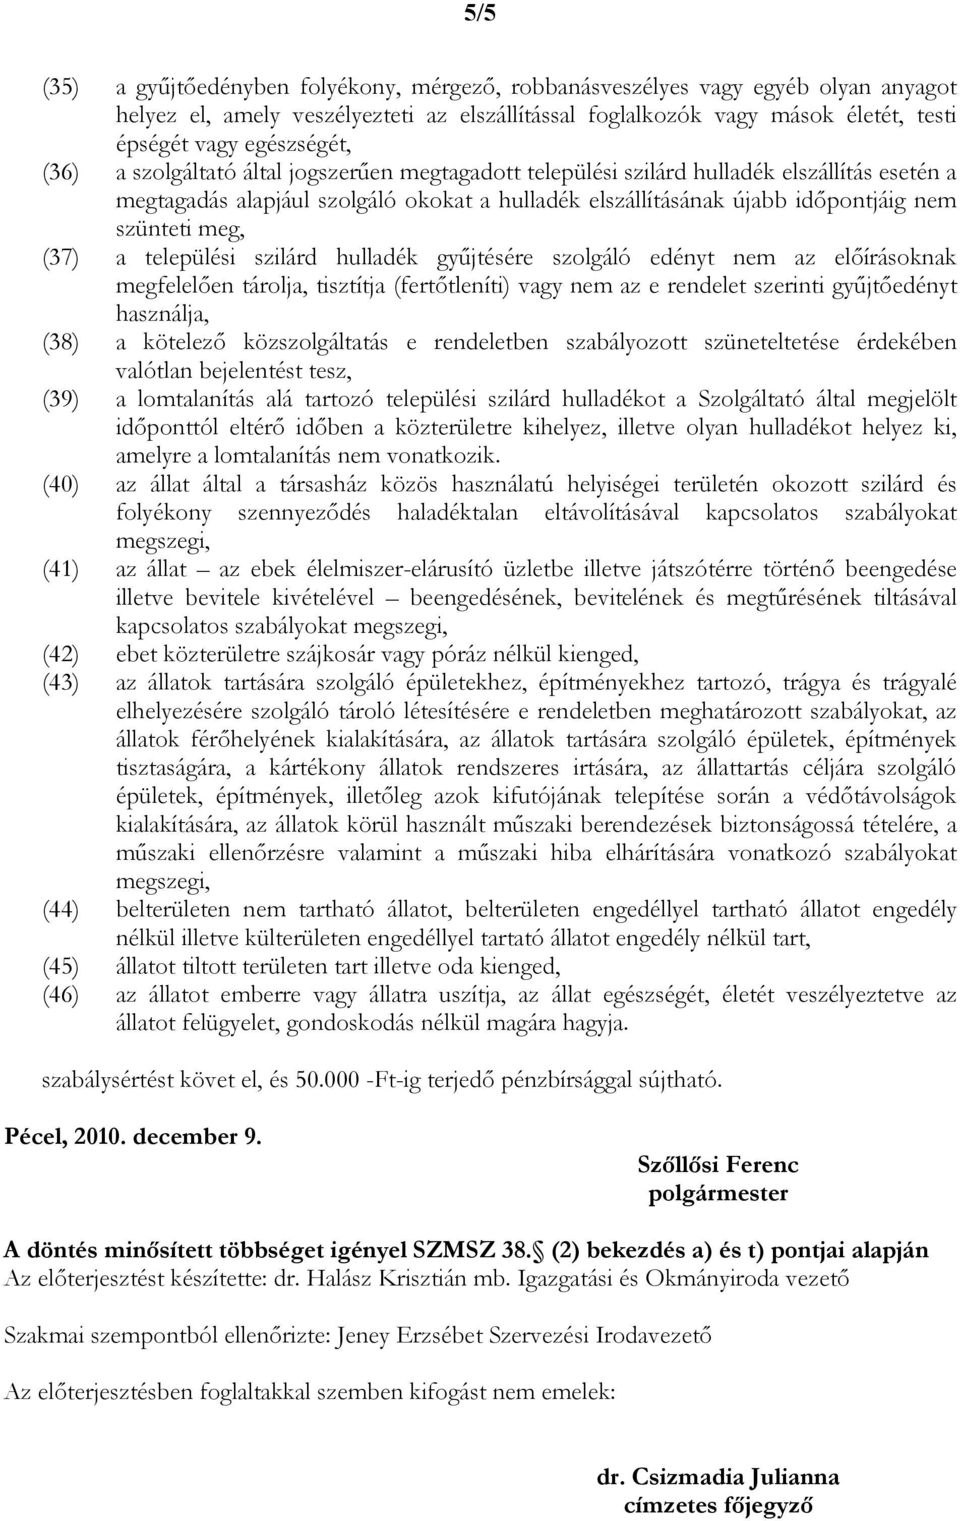 (37) a települési szilárd hulladék győjtésére szolgáló edényt nem az elıírásoknak megfelelıen tárolja, tisztítja (fertıtleníti) vagy nem az e rendelet szerinti győjtıedényt használja, (38) a kötelezı